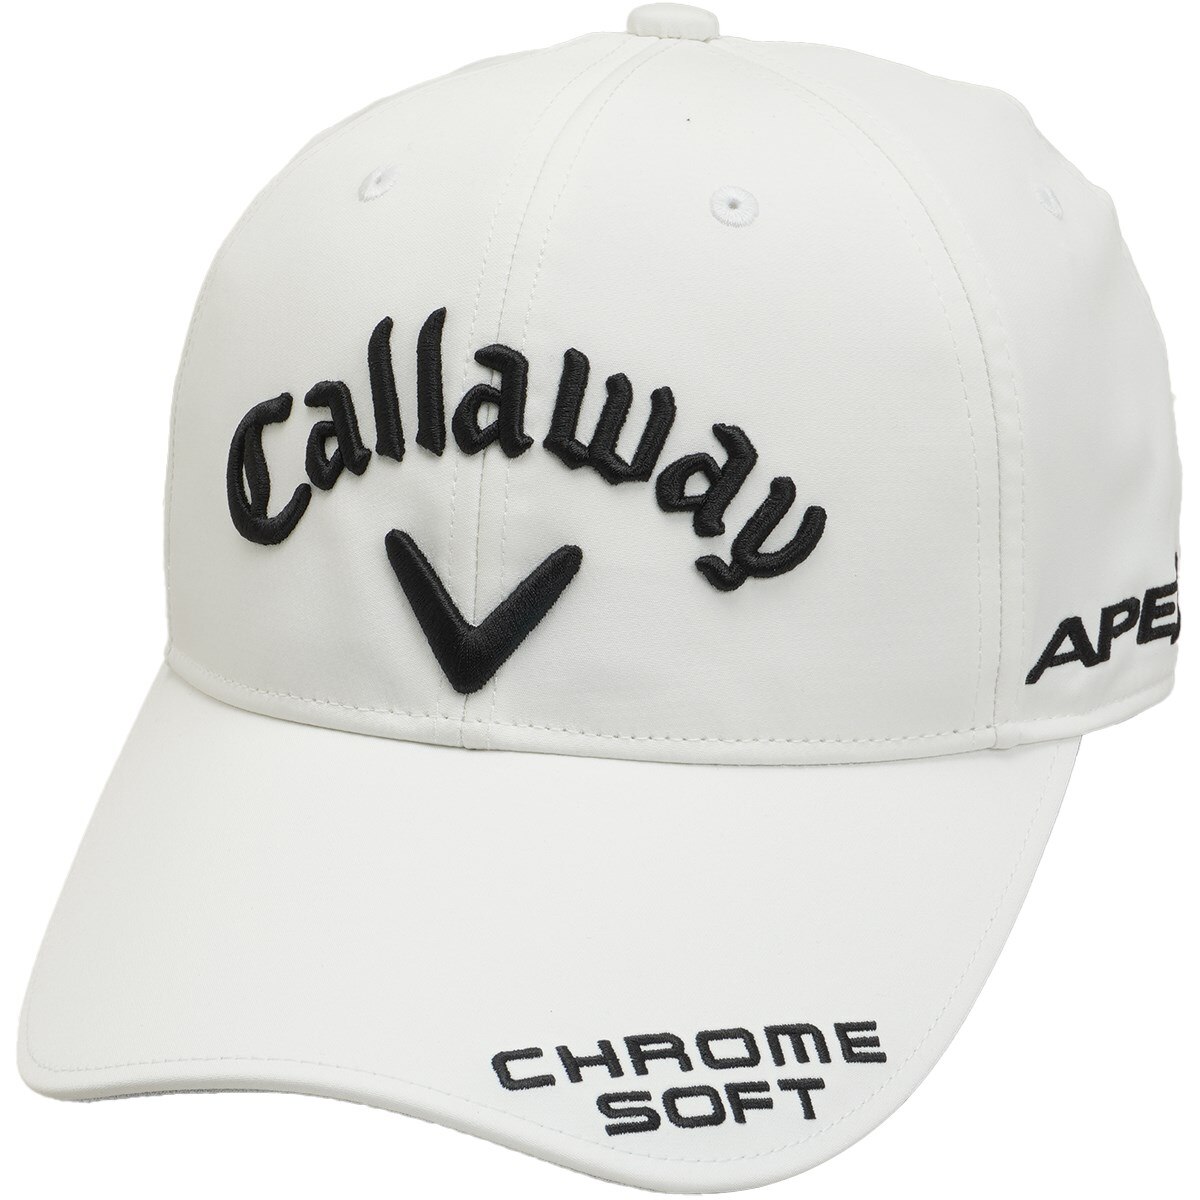 Callaway キャロウェイ ゴルフ 帽子